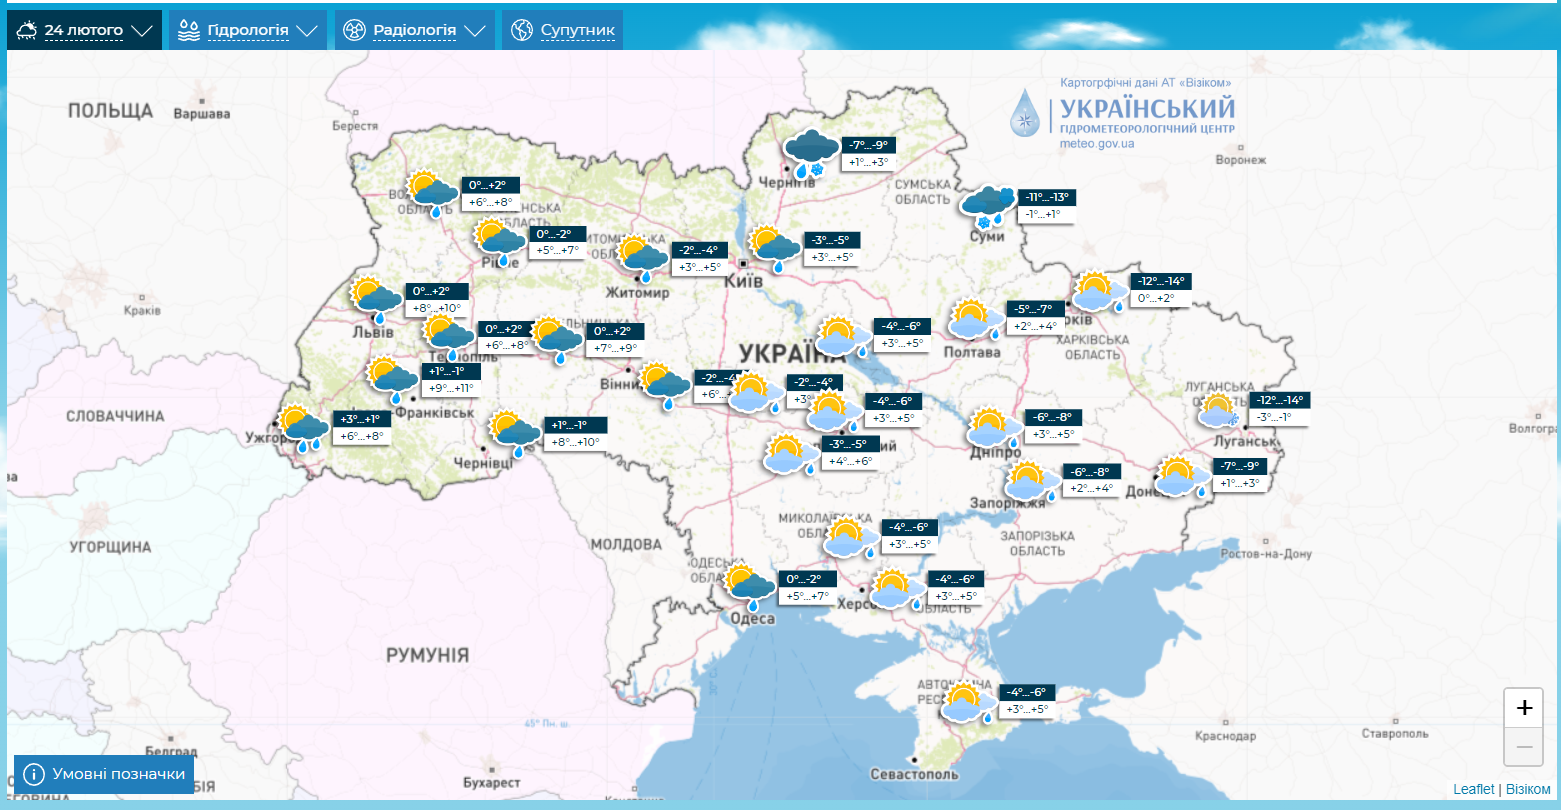 В Україну ввірветься тепло до +13, але сніг ще нагадає про себе: синоптики дали прогноз до кінця тижня. Мапи 